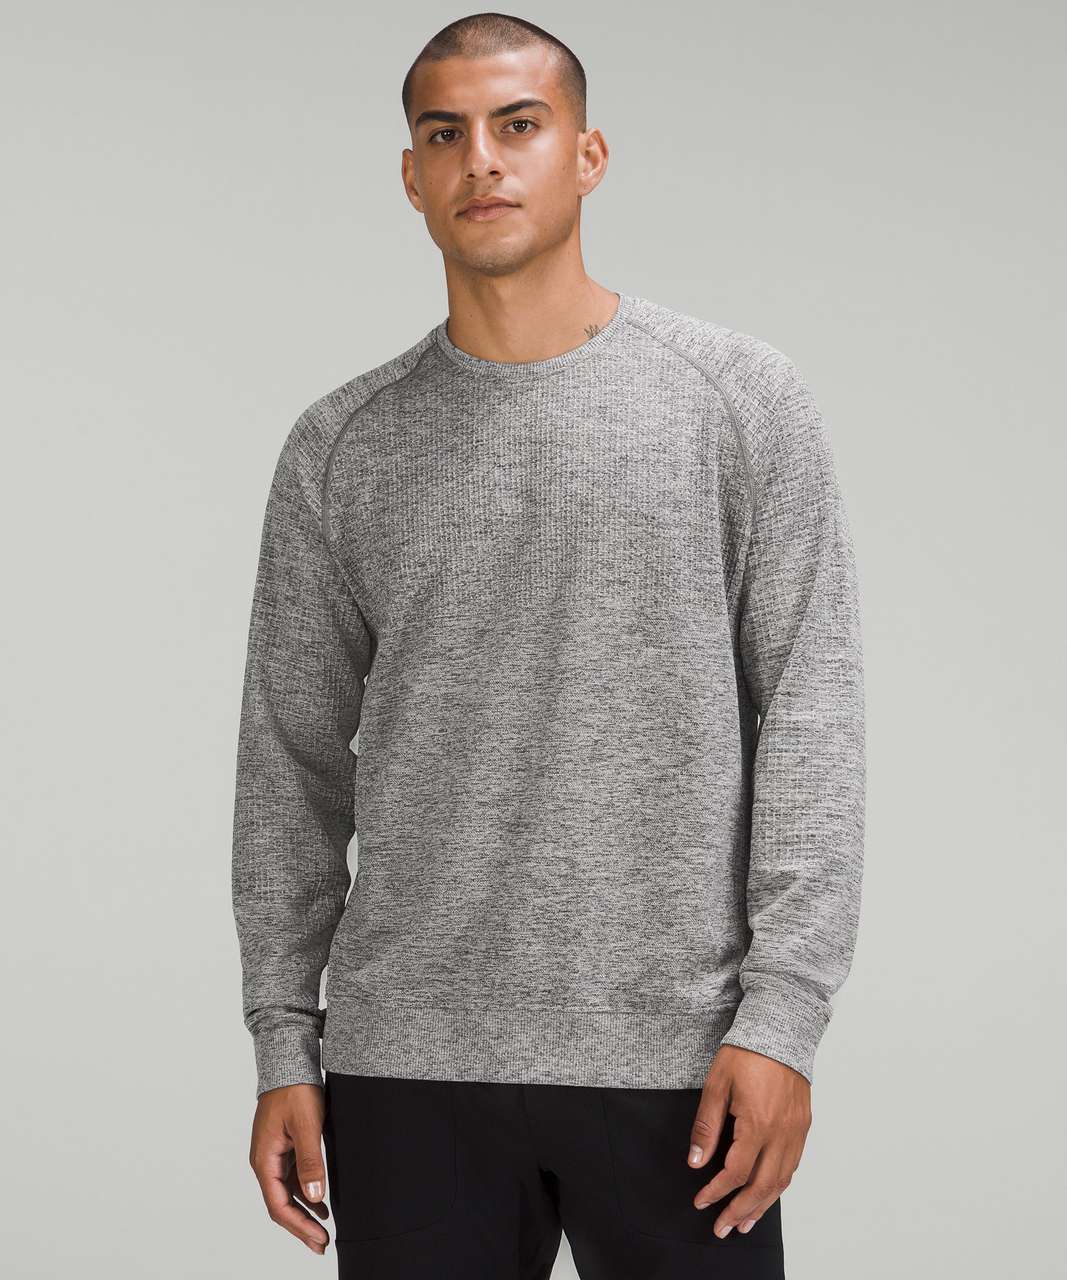 Sweatshirt Lululemon Grey size 8 US in Synthetic - 33594398